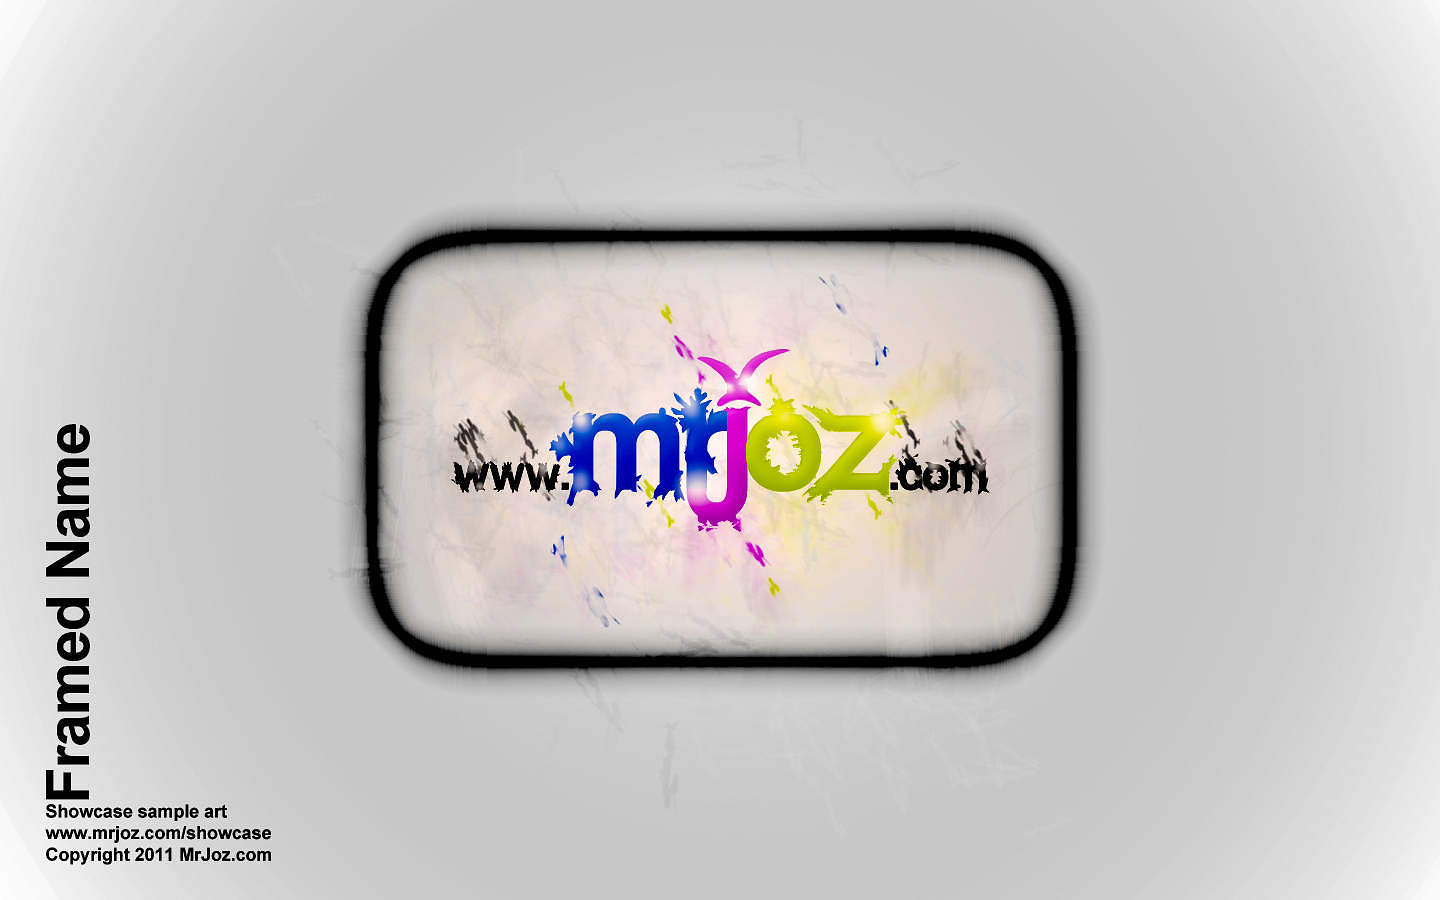 MrJoz.com decal for website branding